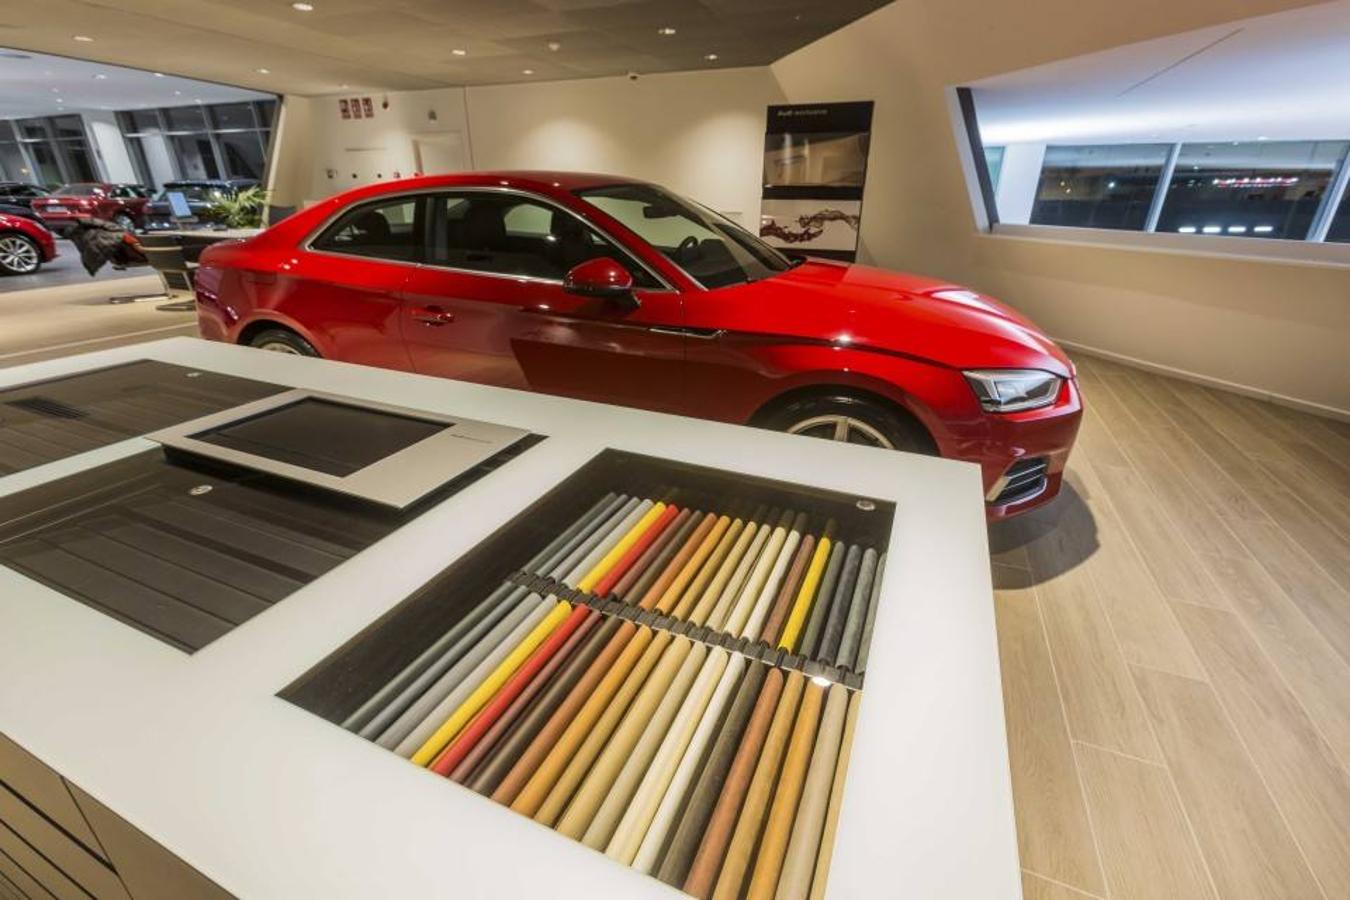 Audi Valencia estrena el mayor edificio ‘Terminal’ en España